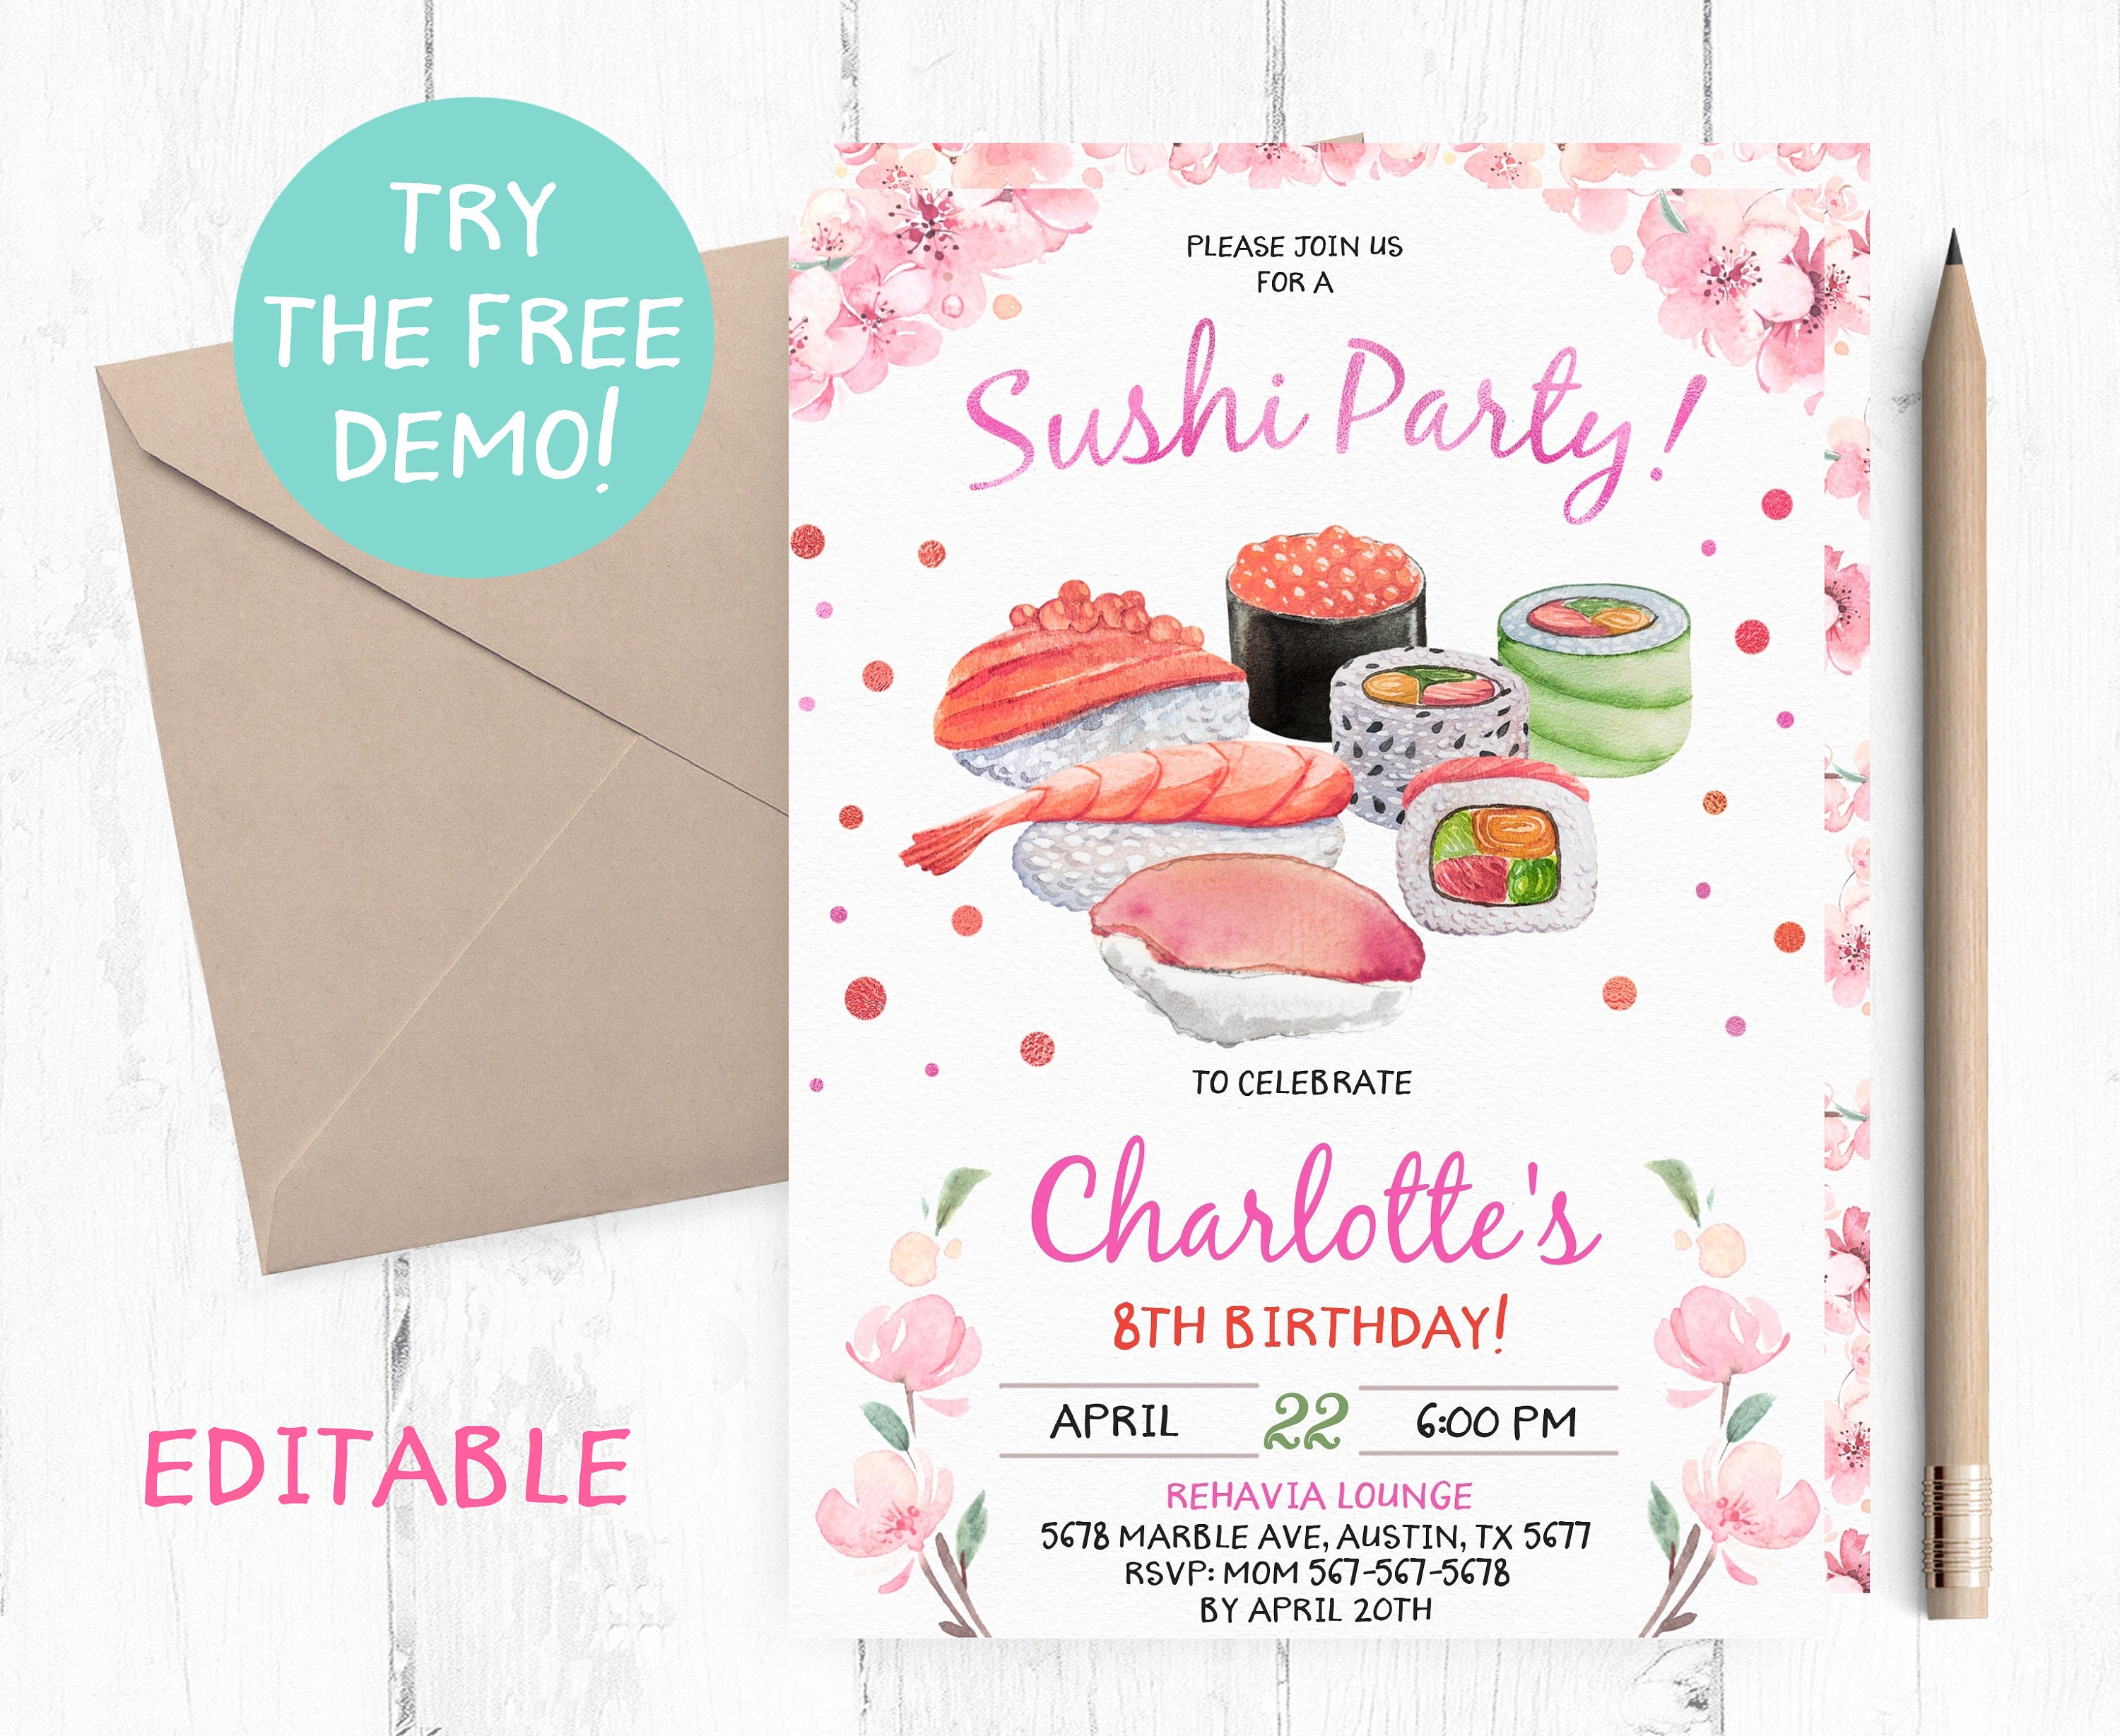 Birthday Party no Subarashii Sushi - Eventos no Portal